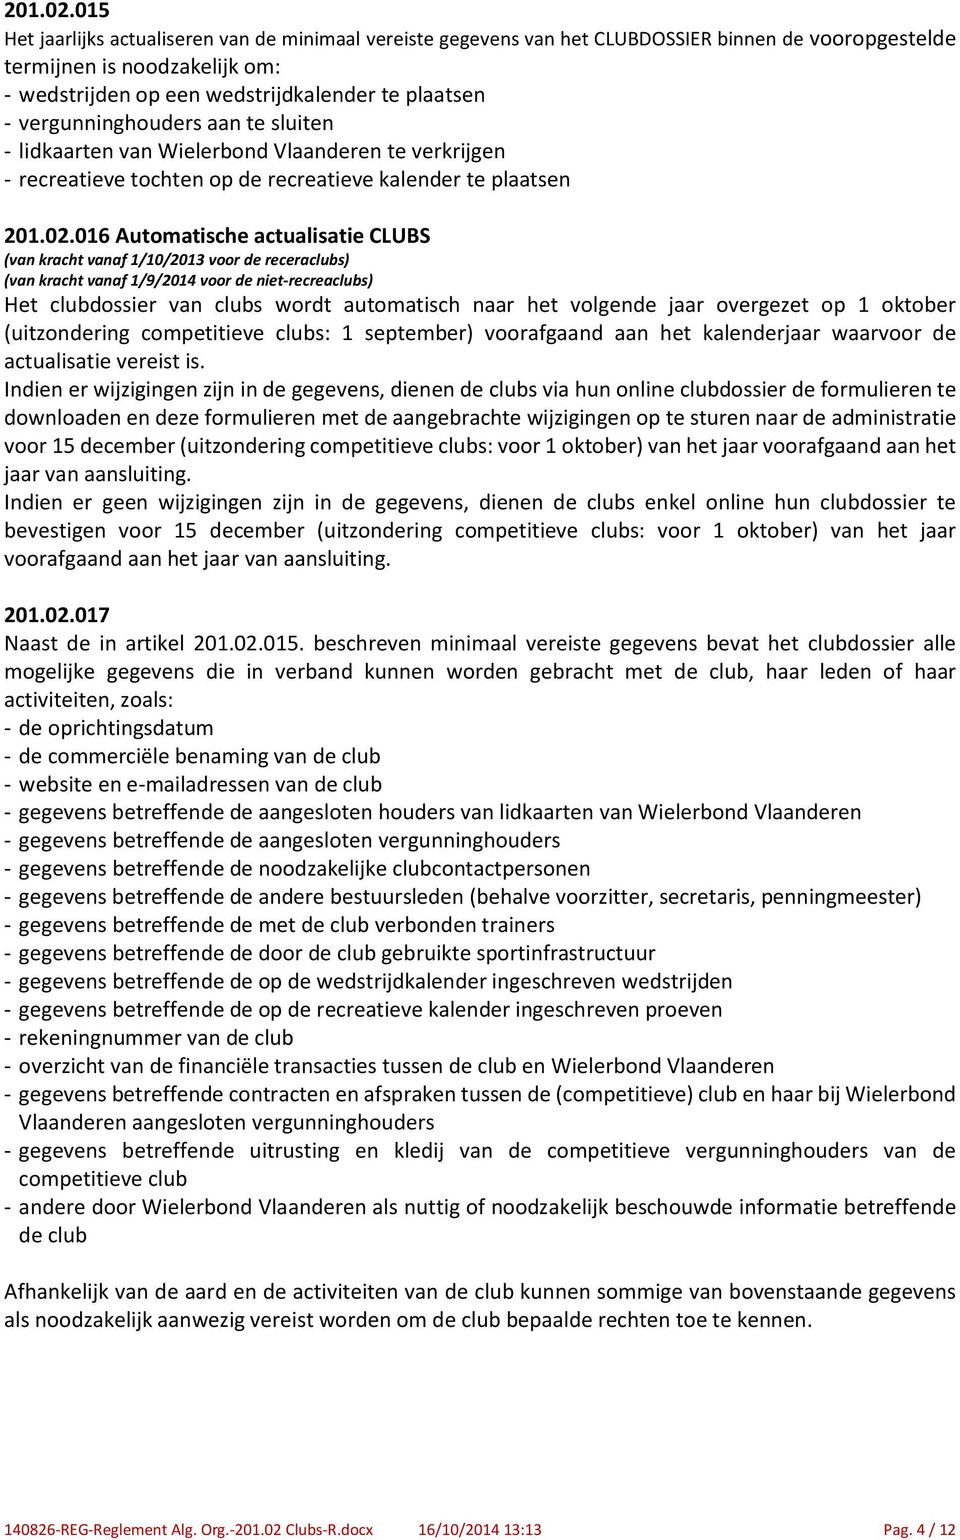 vergunninghouders aan te sluiten - lidkaarten van Wielerbond Vlaanderen te verkrijgen - recreatieve tochten op de recreatieve kalender te plaatsen 016 Automatische actualisatie CLUBS (van kracht